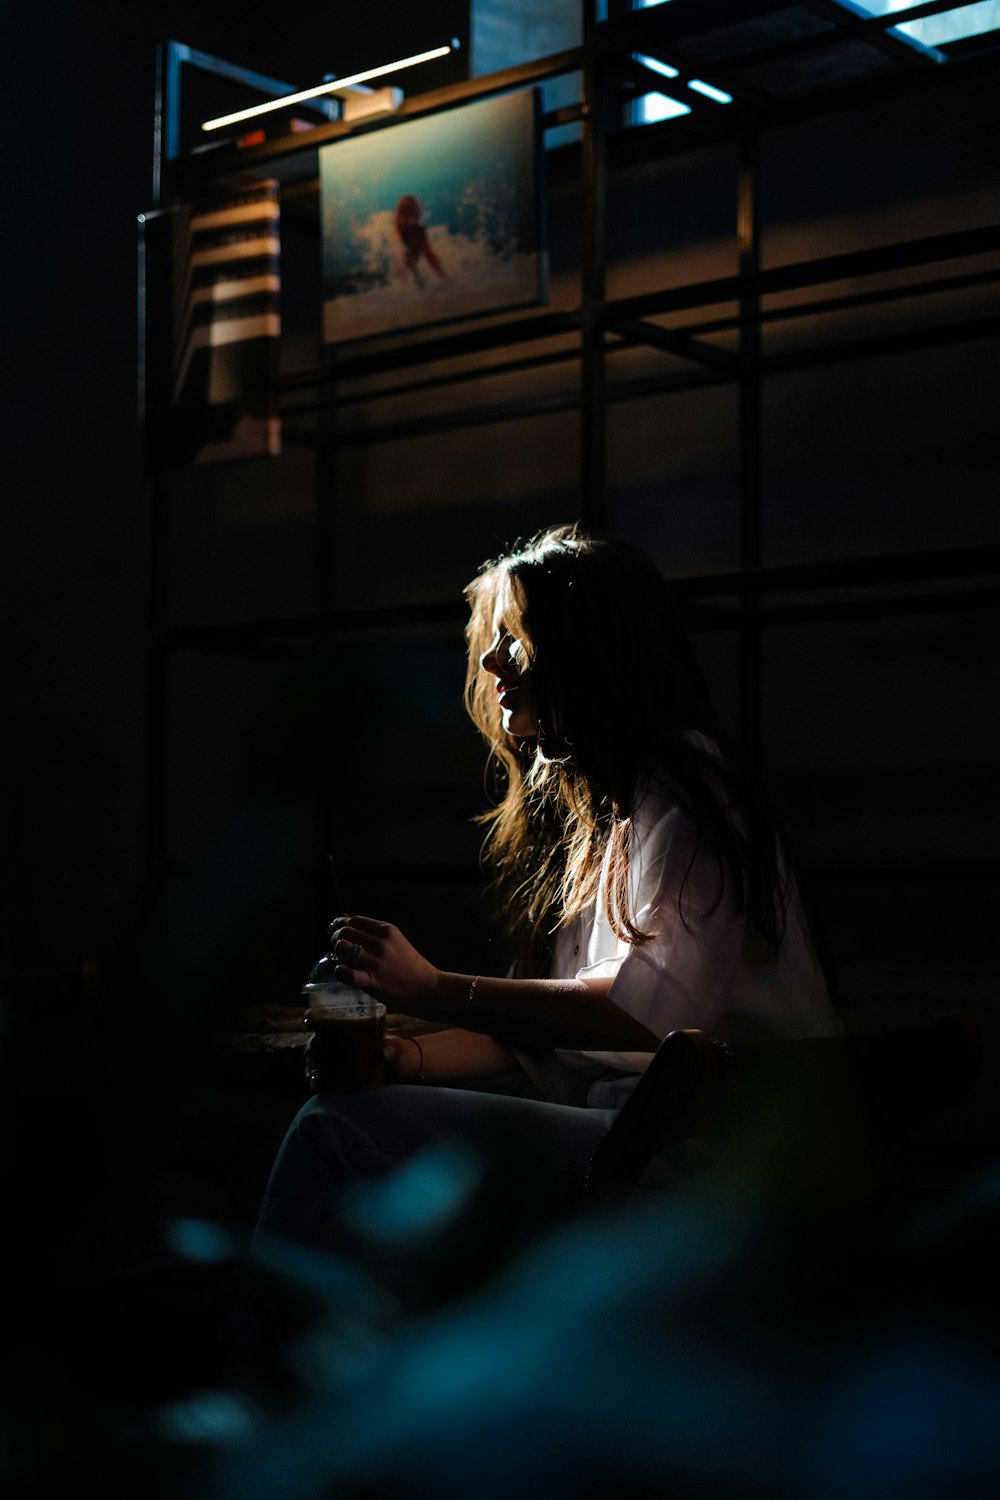 a woman sitting in a dark room